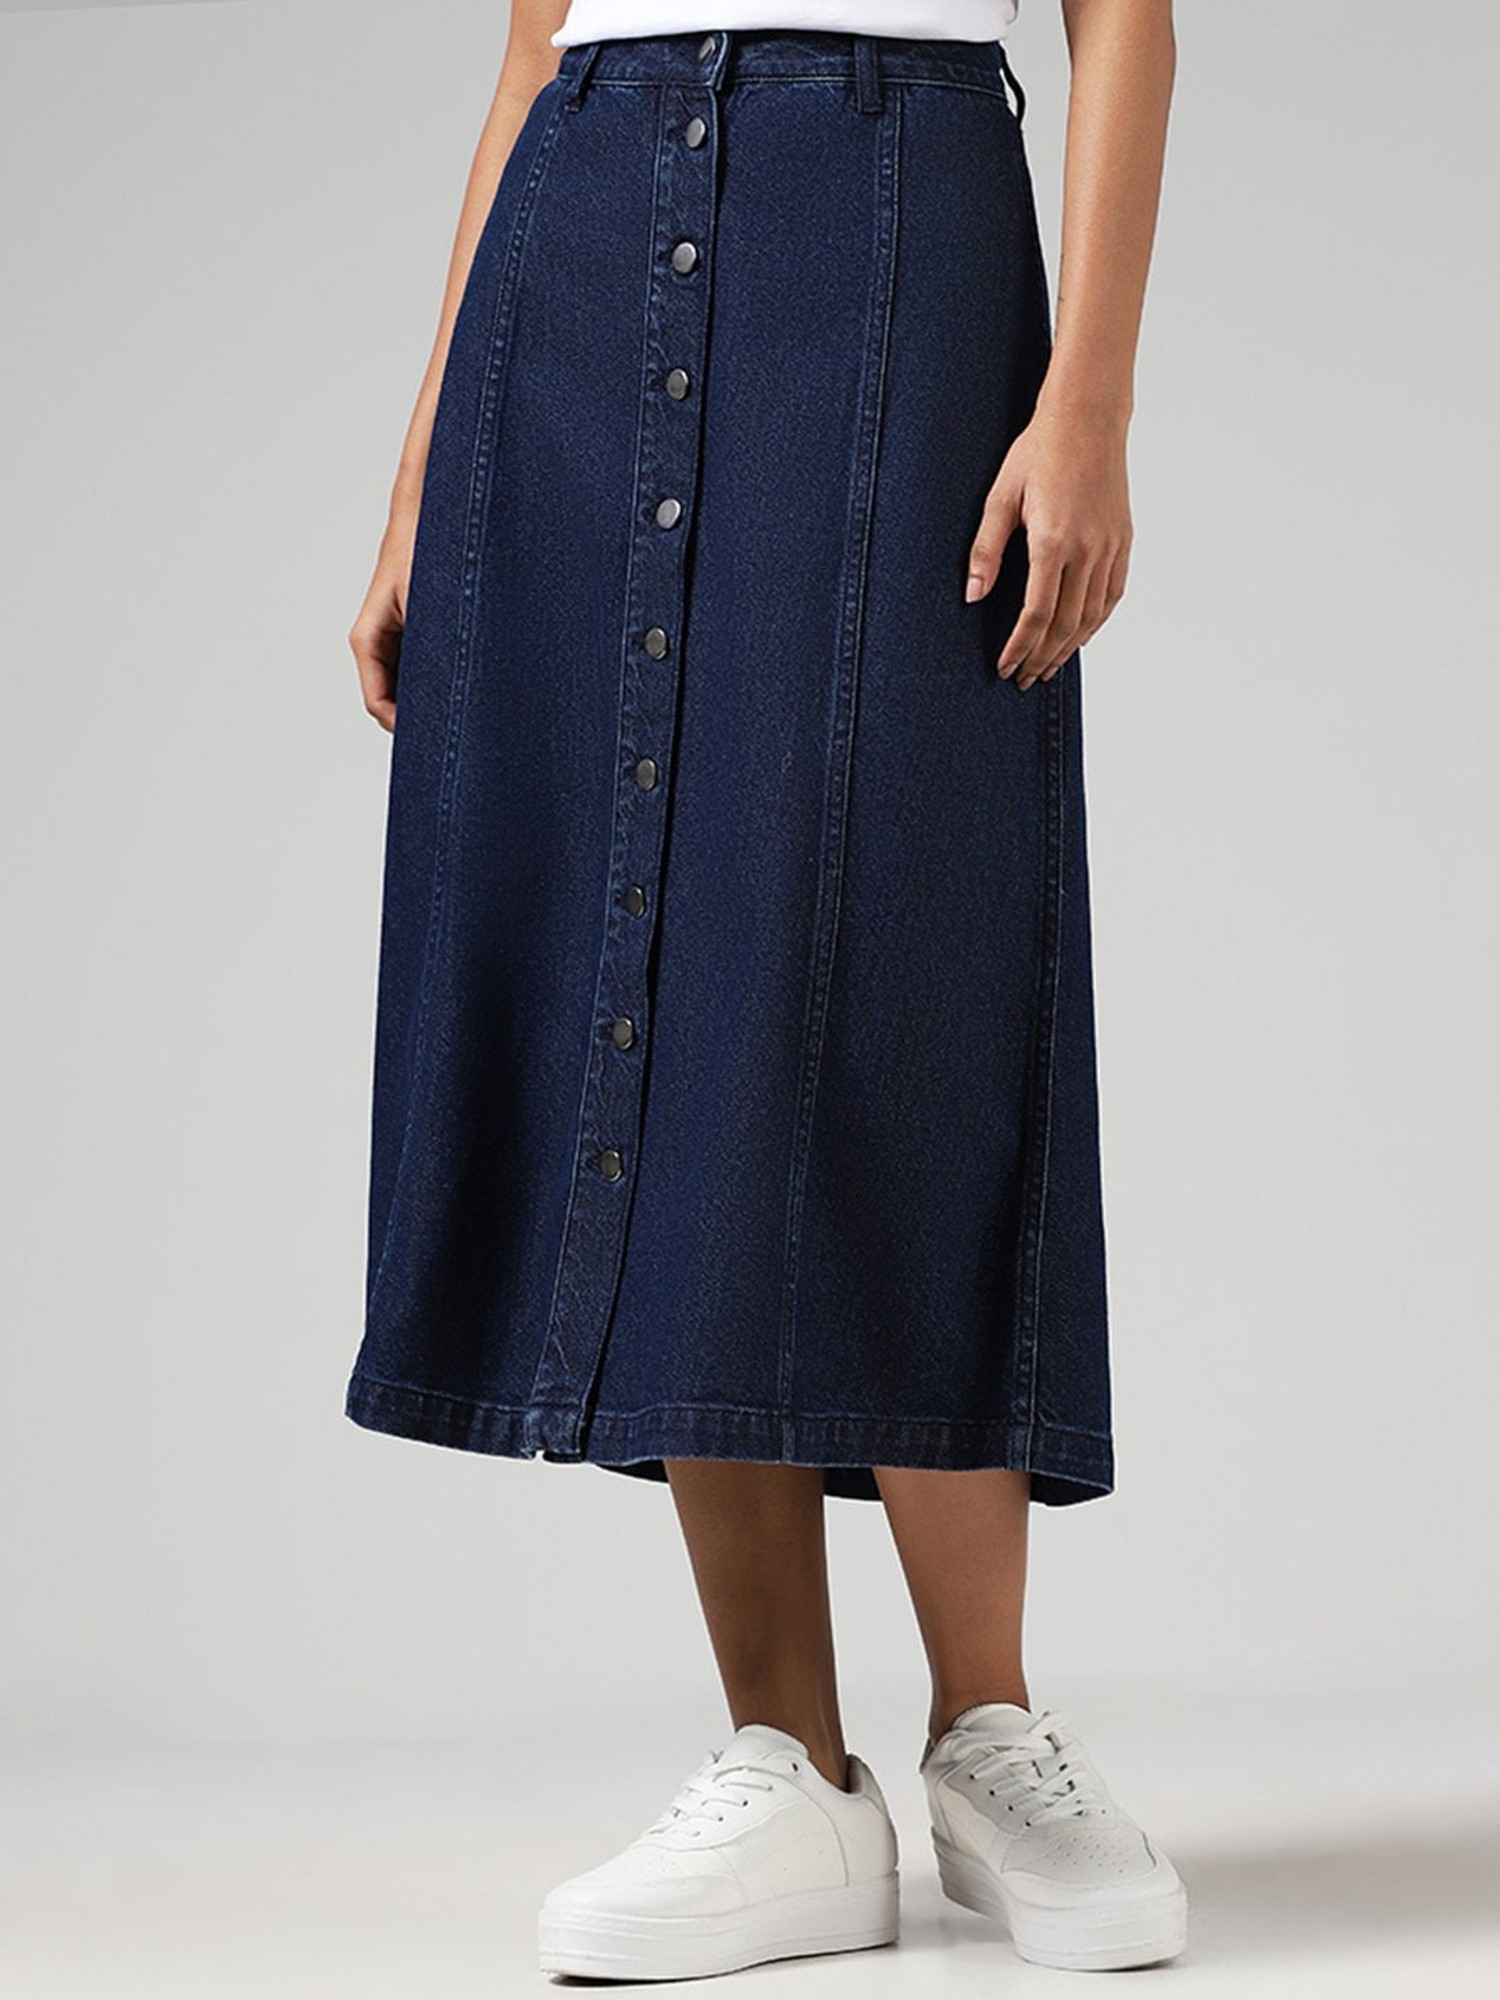 2018 New Sun Skirt A-line Button Up Skirt Casual Denim Skirts For Women  High Waist Short Skirts Pleated School Skirt Kk980 Hq - Skirts - AliExpress